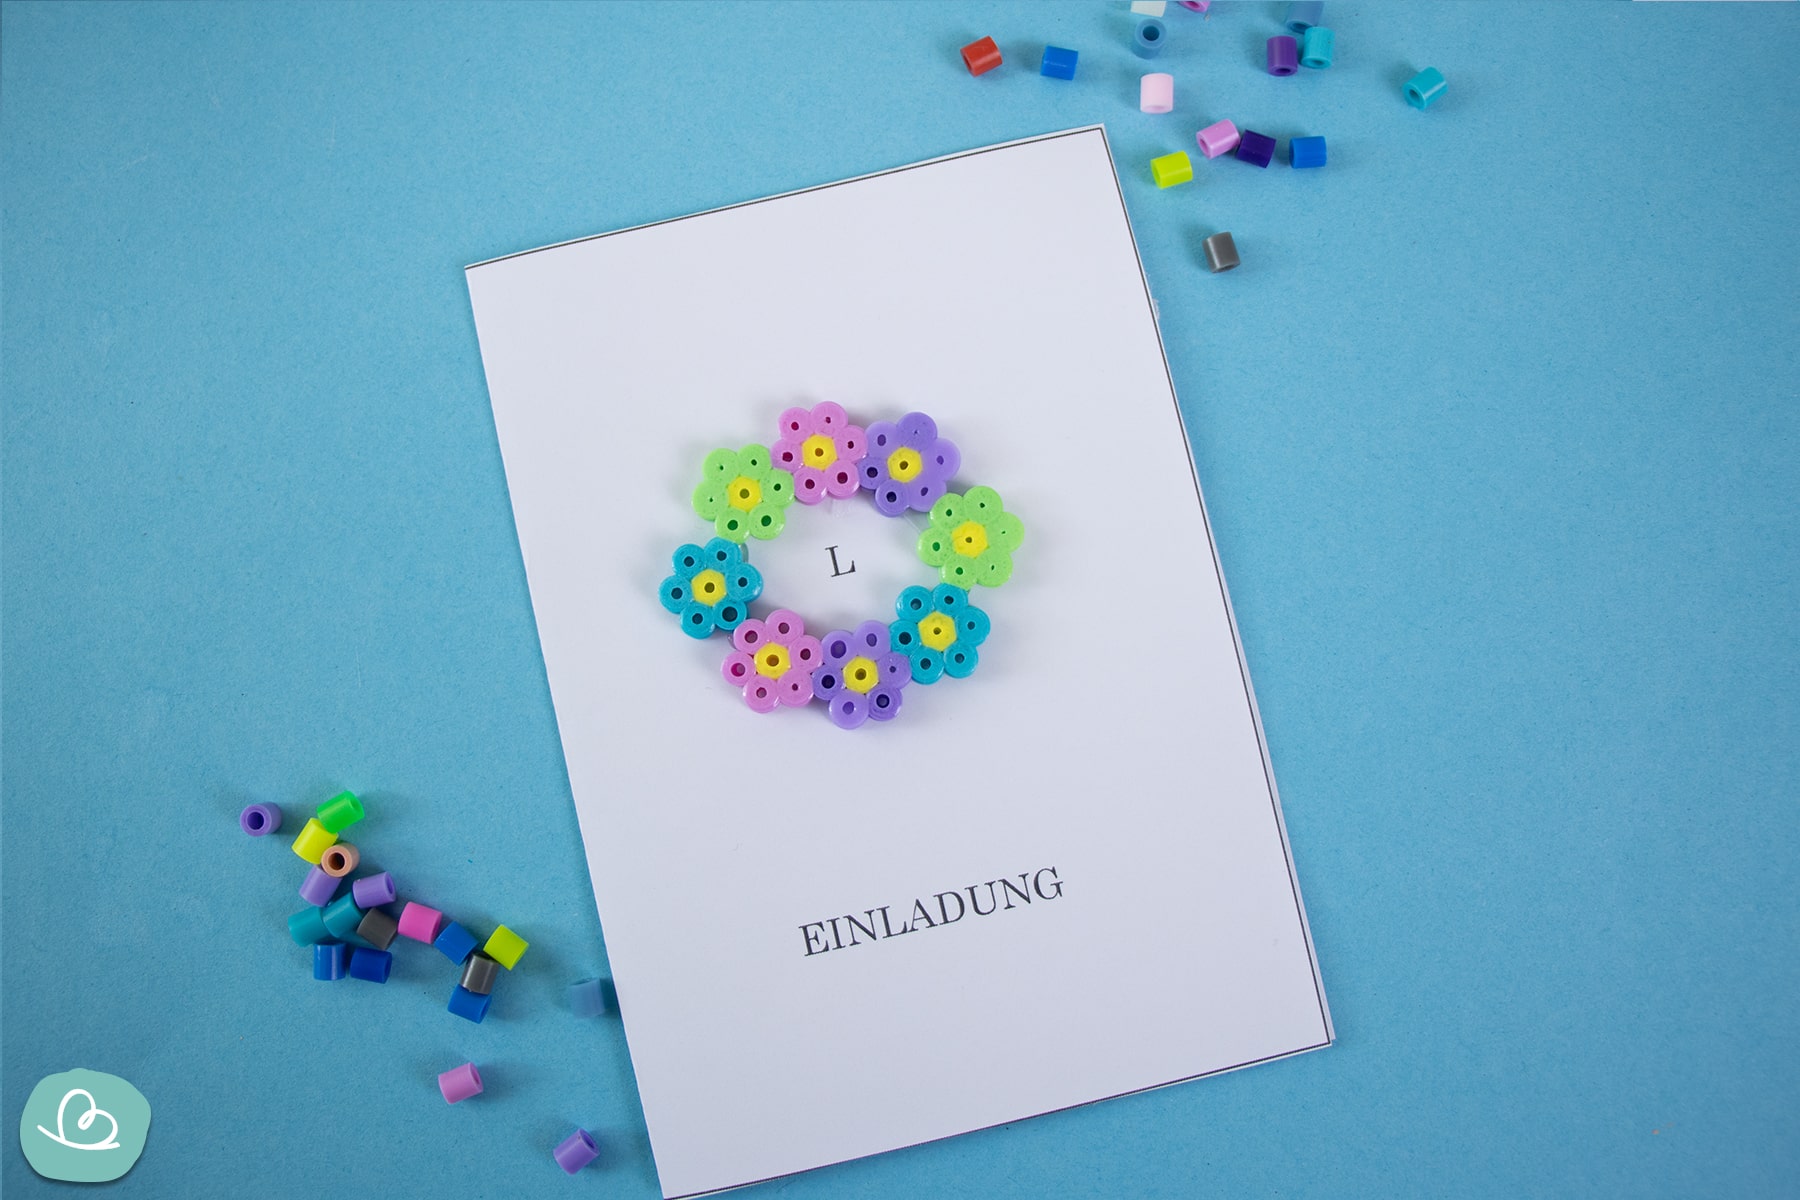 Einladungskarte mit Blumenkranz aus Bügelperlen